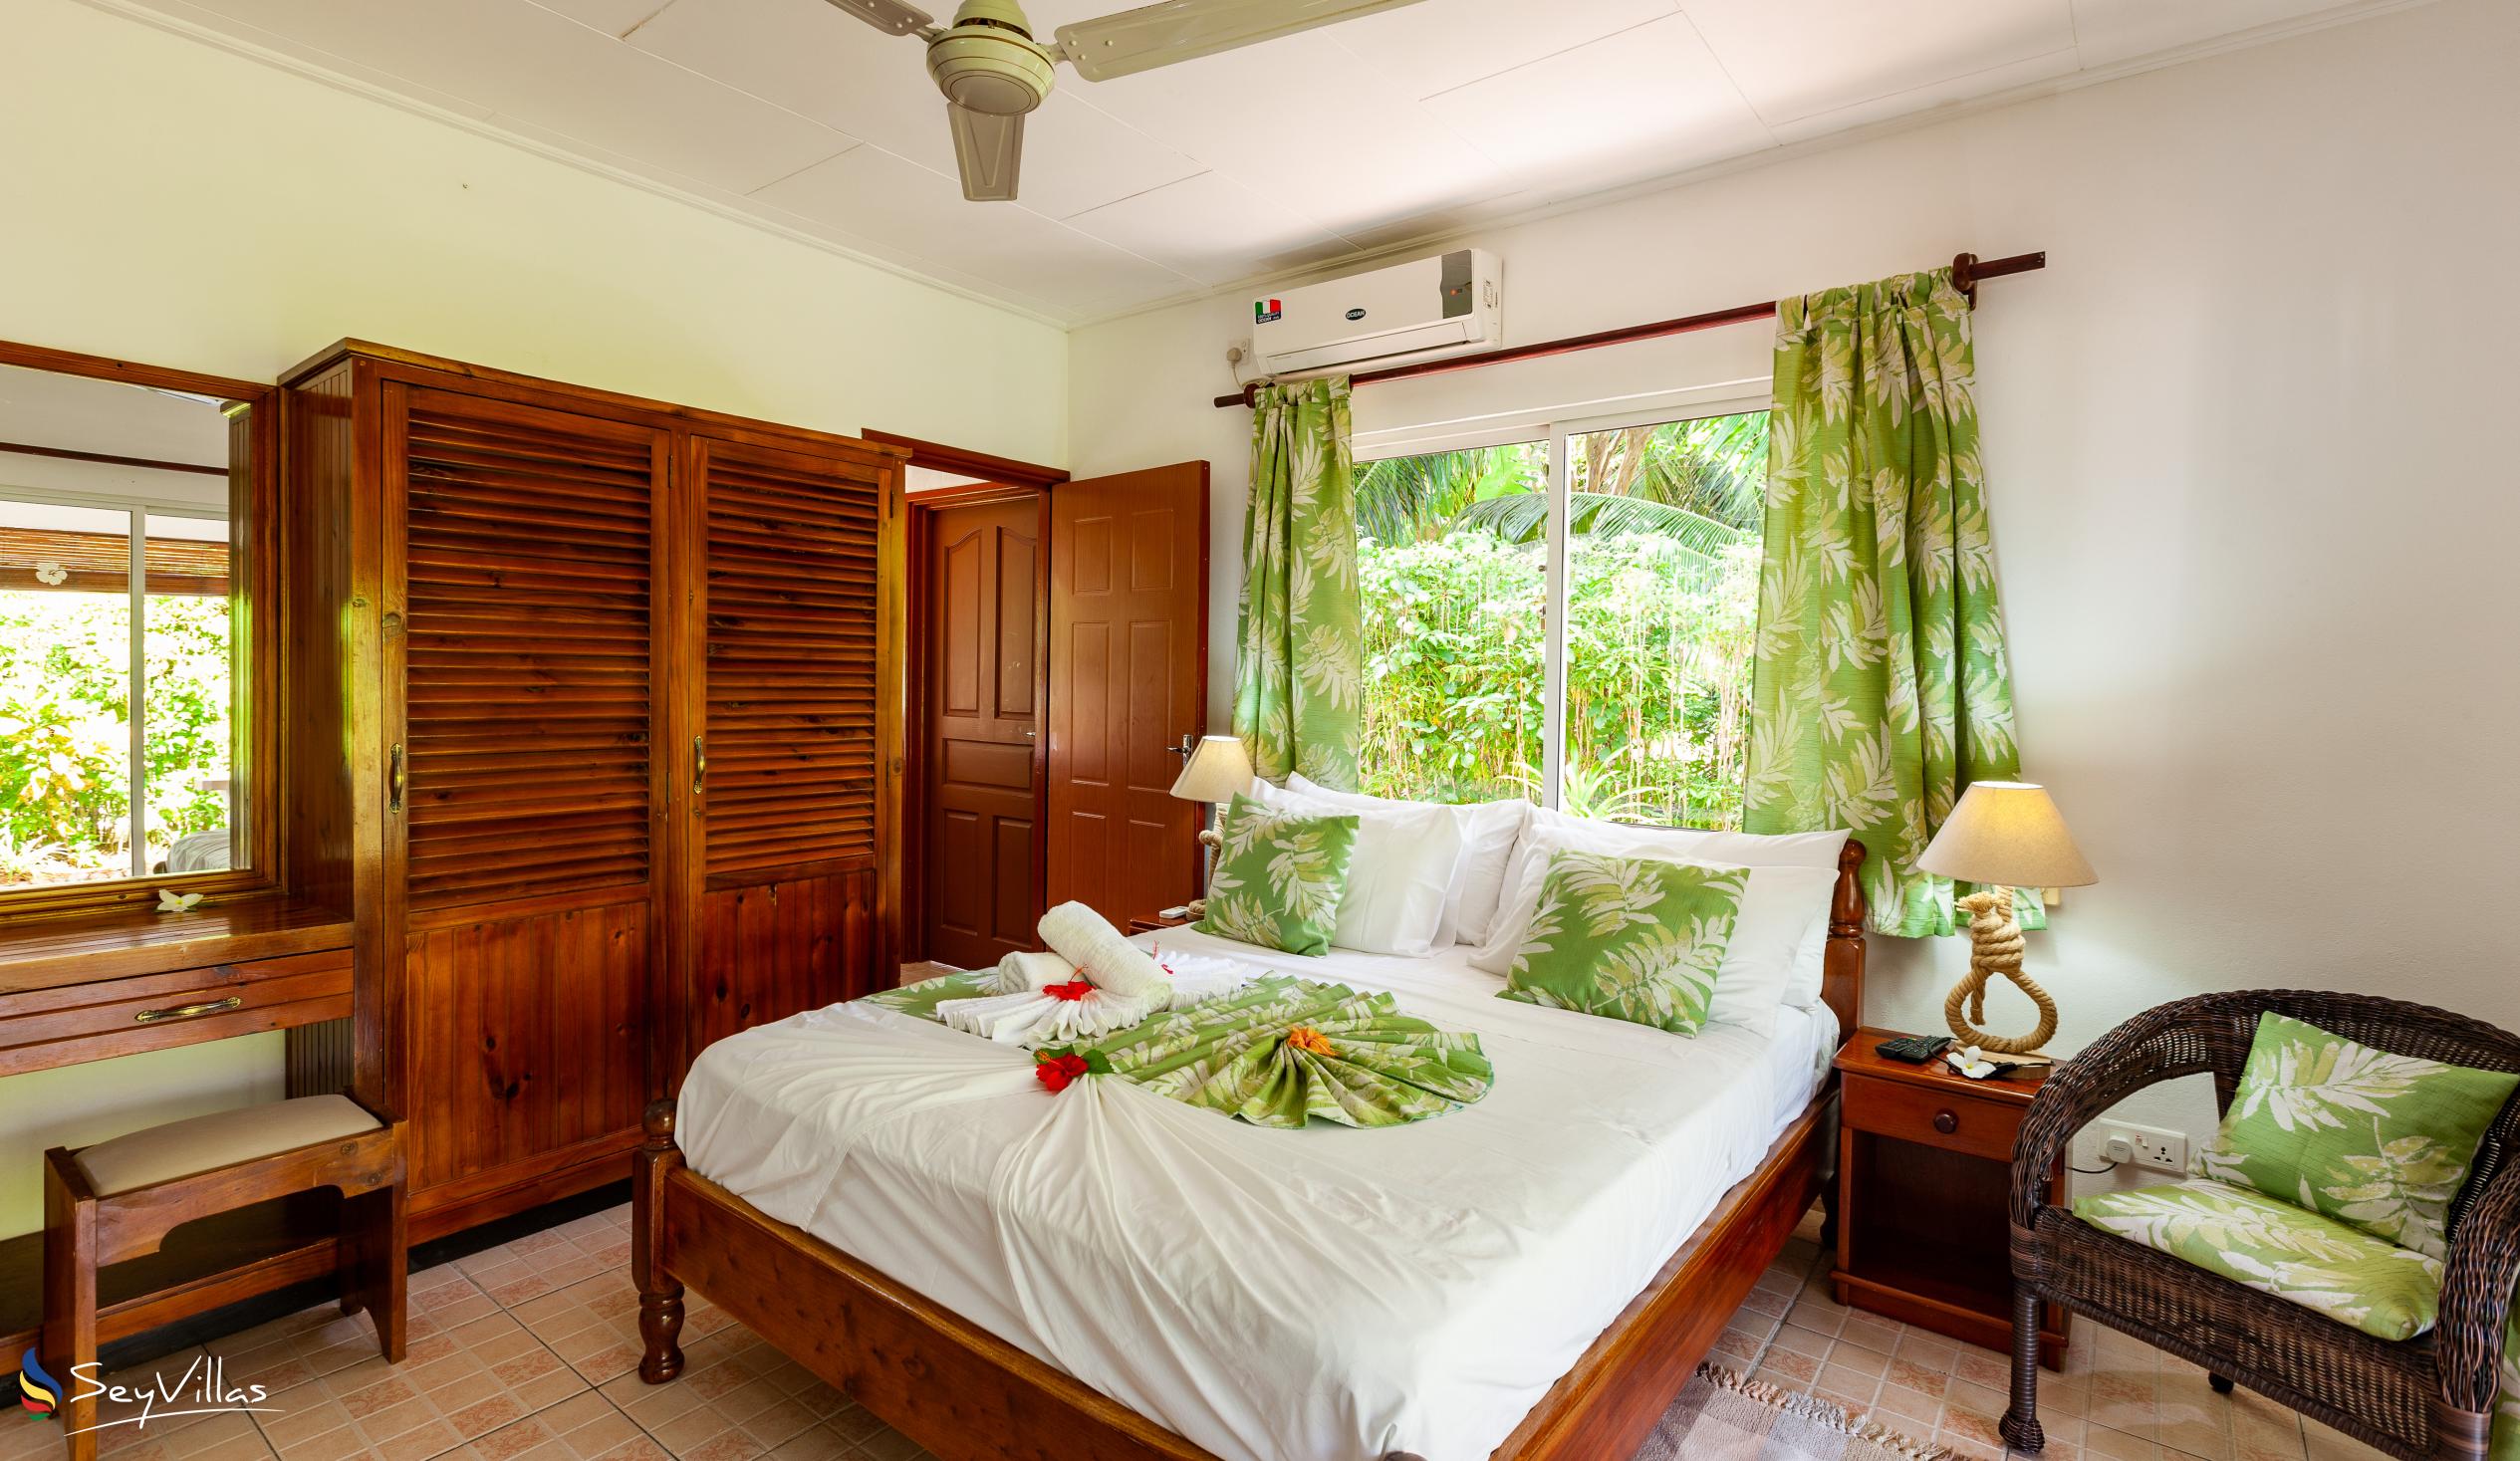 Foto 26: Pension Hibiscus - Maison Eliza - Chambre Standard - La Digue (Seychelles)